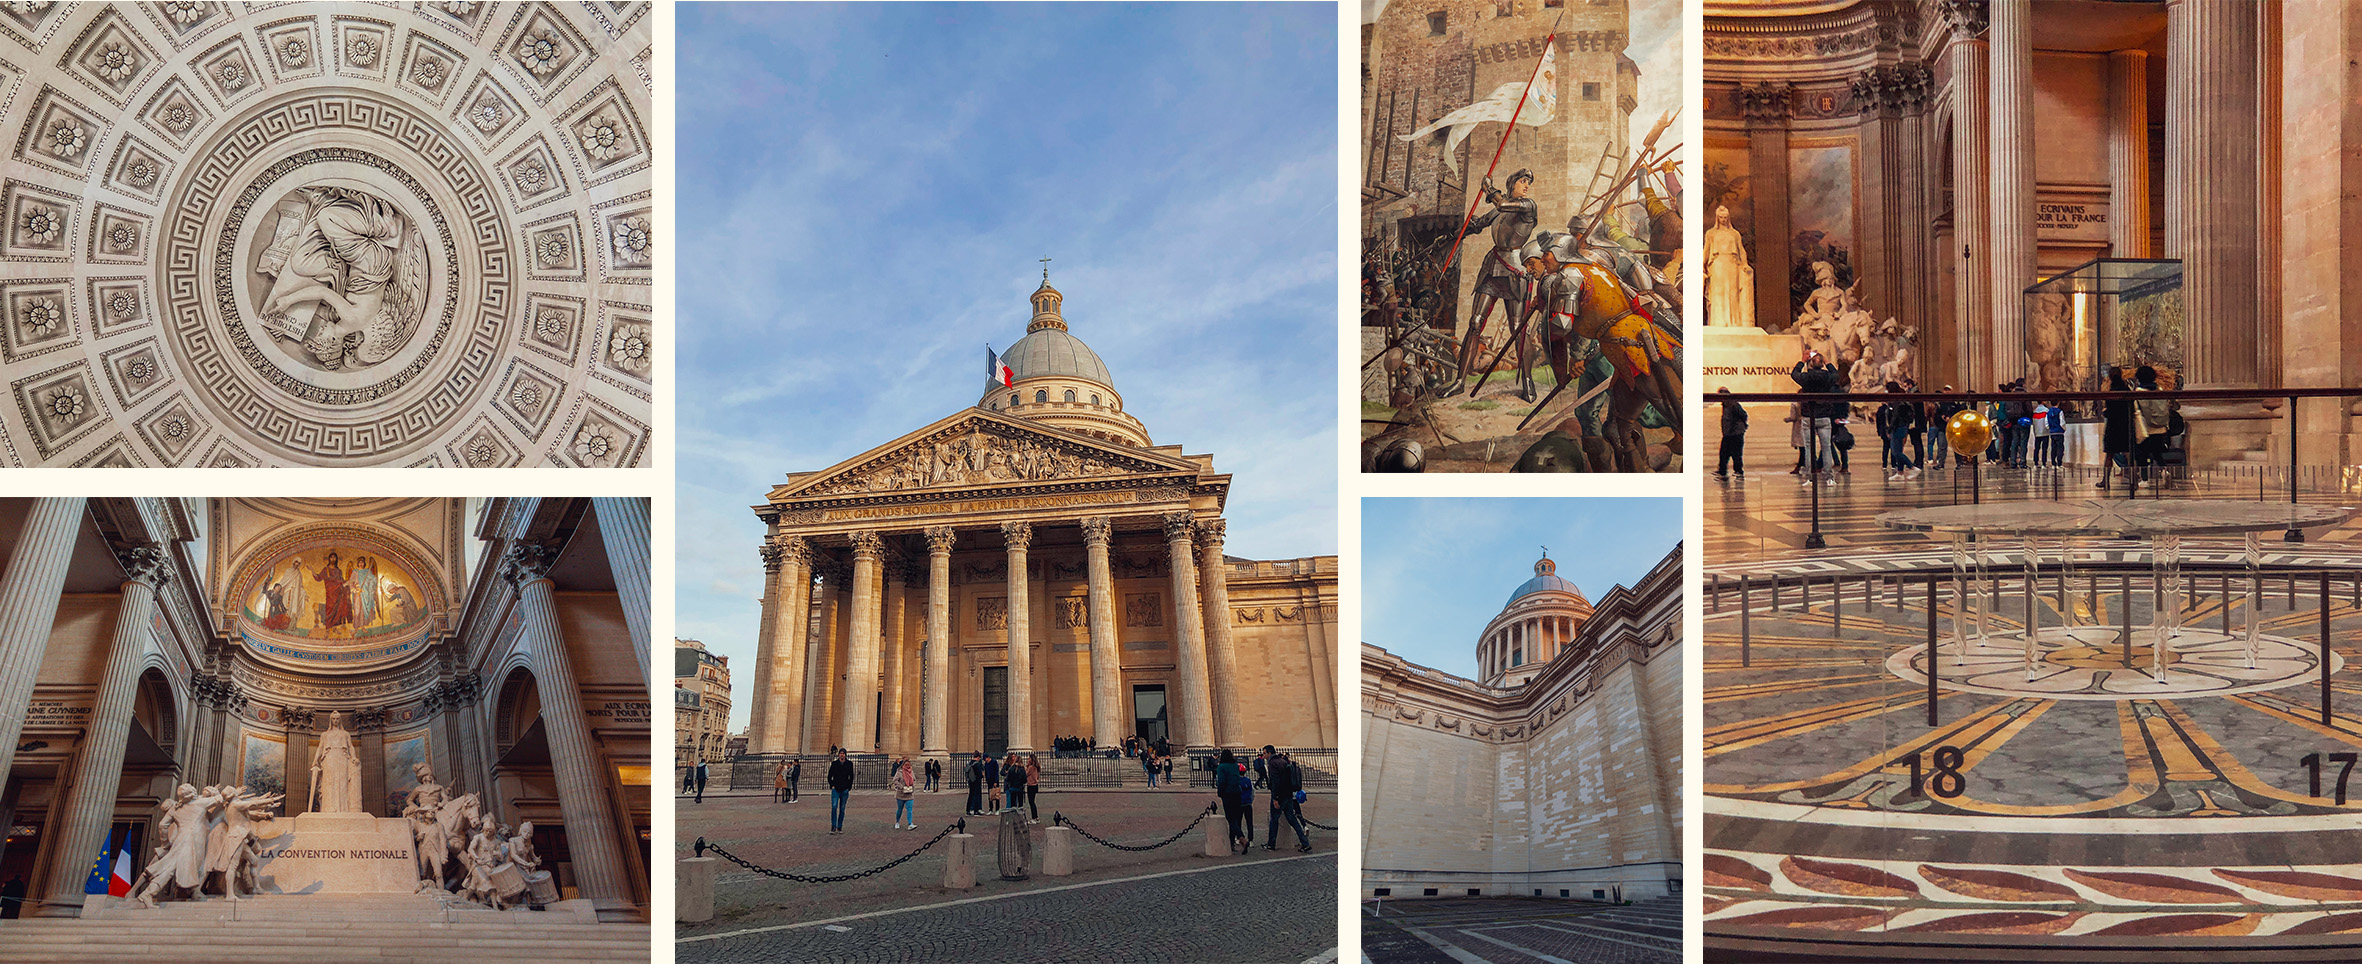  Imagenes del Panteón París en el atardecer